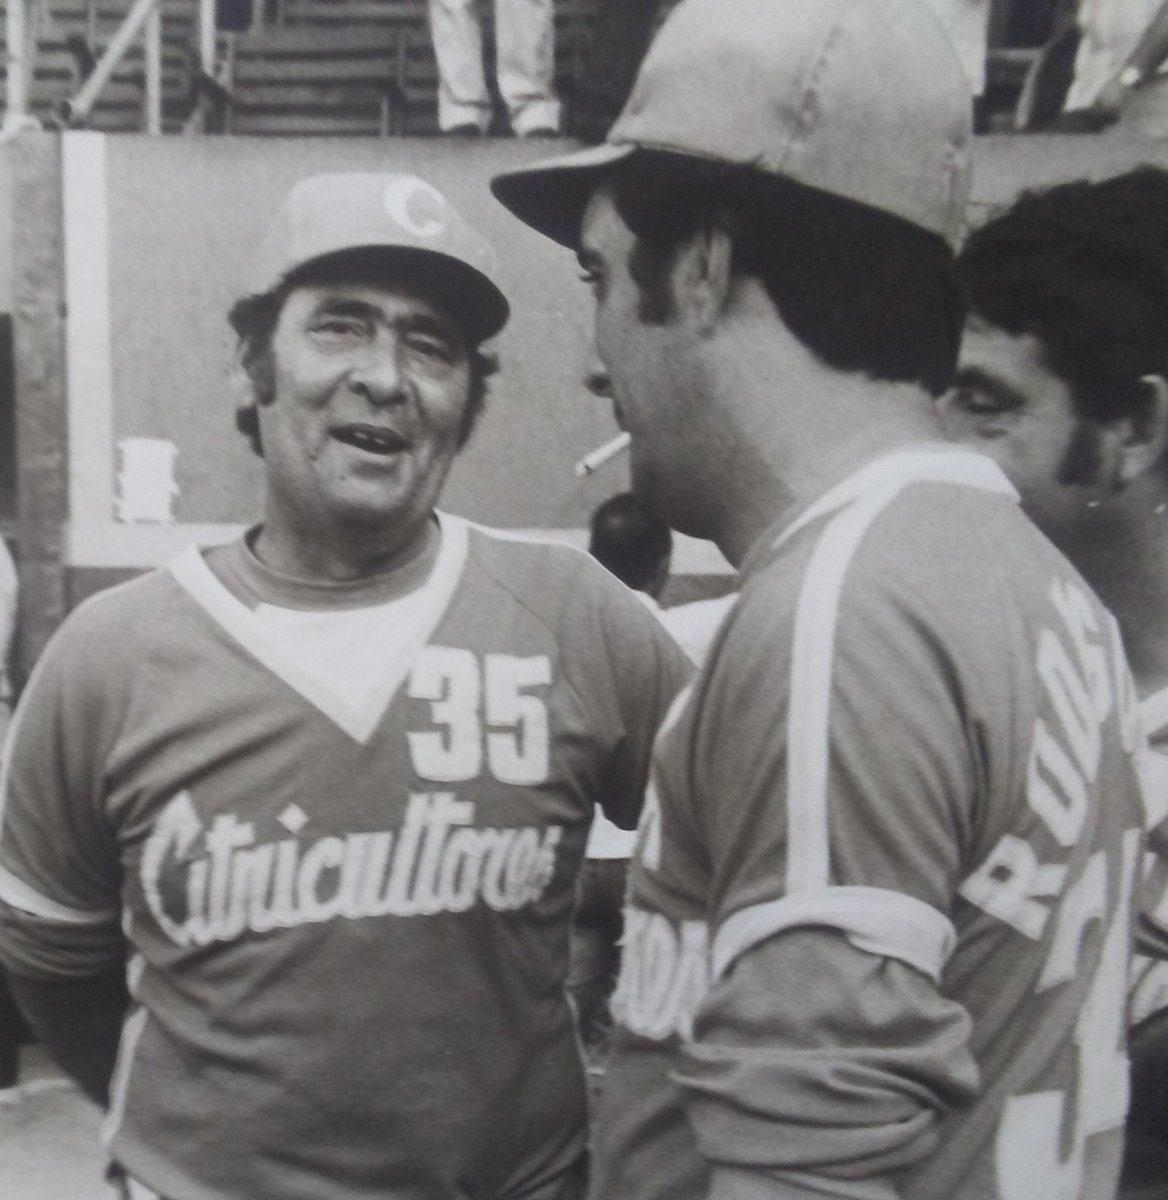 Falleció Tomás Soto, figura icónica del #BeisbolCubano. Nuestras condolencias para familiares y amigos de quien fuera fundador de nuestras series nacionales, en la que se tituló jugador y director.